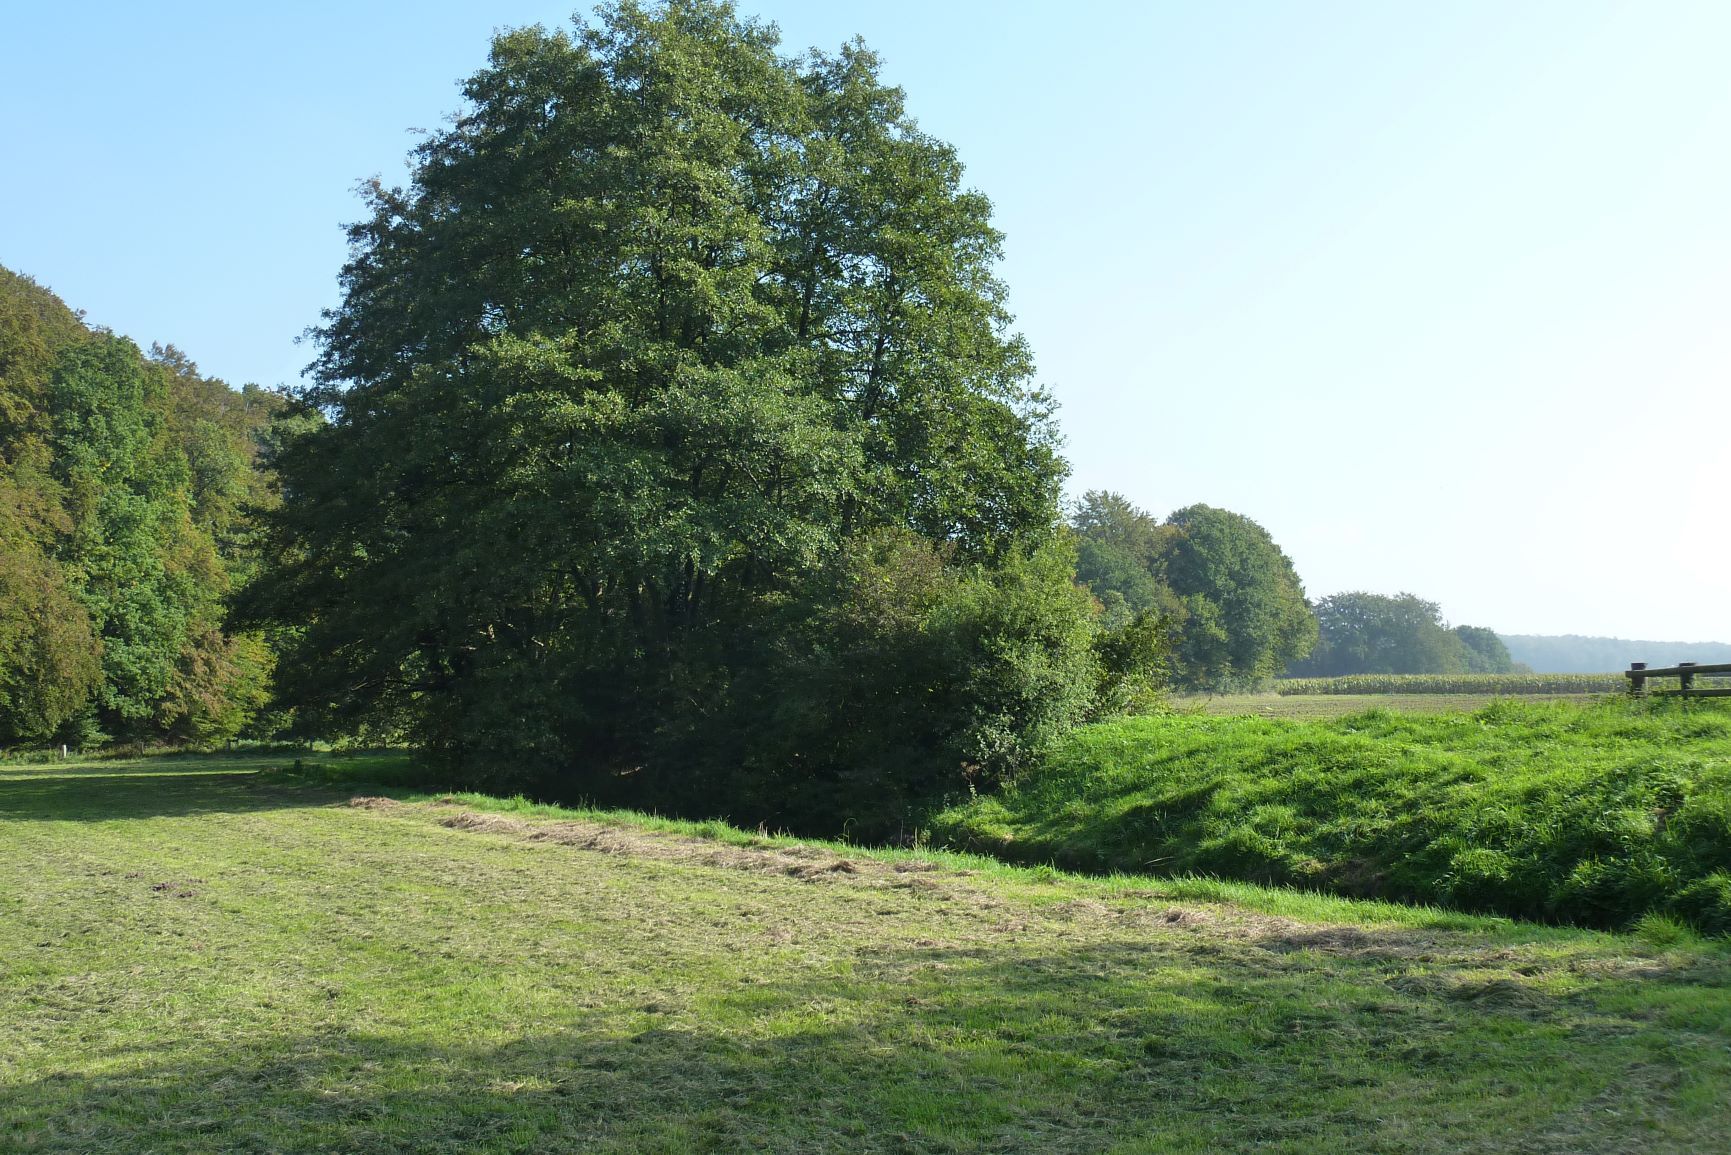 Abb. 7: Abgeplaggter nasser Wiesenbereich, rechts im Hintergrund eine Eschkante (Foto: K. Mueller)